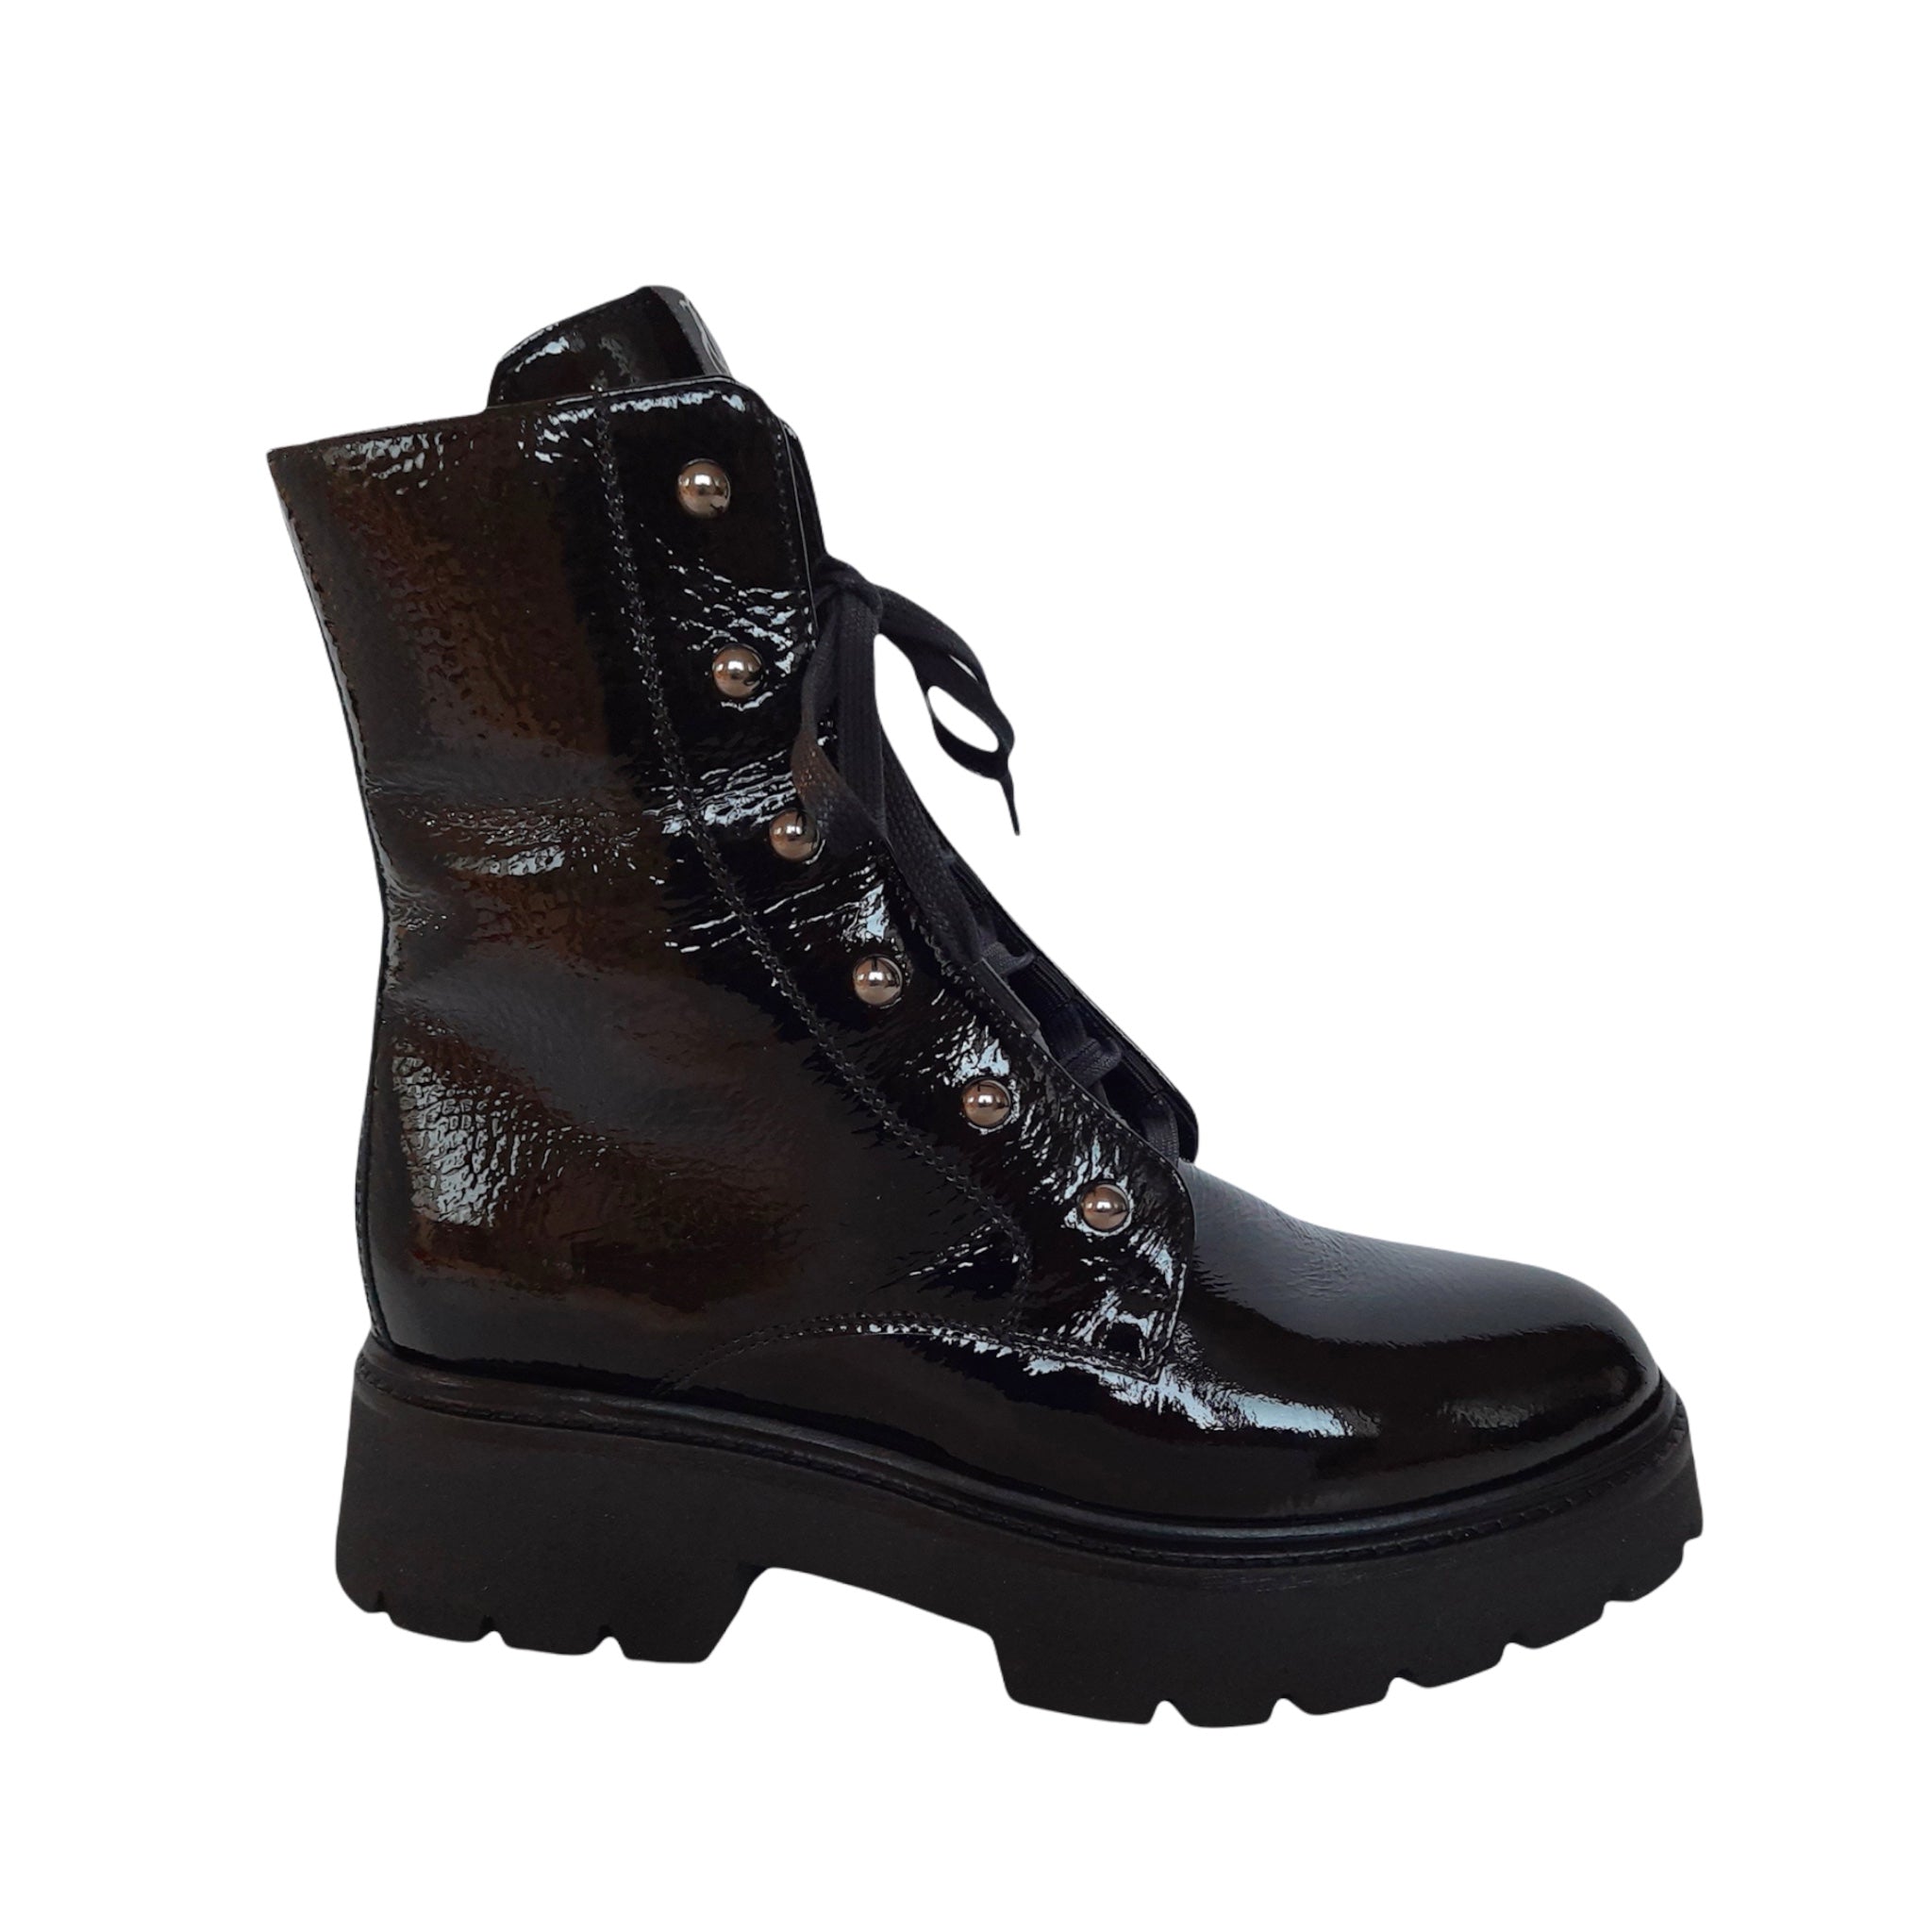 DL Sport Khloe Patent Ankle Boot Black 6094 F744/I V 01